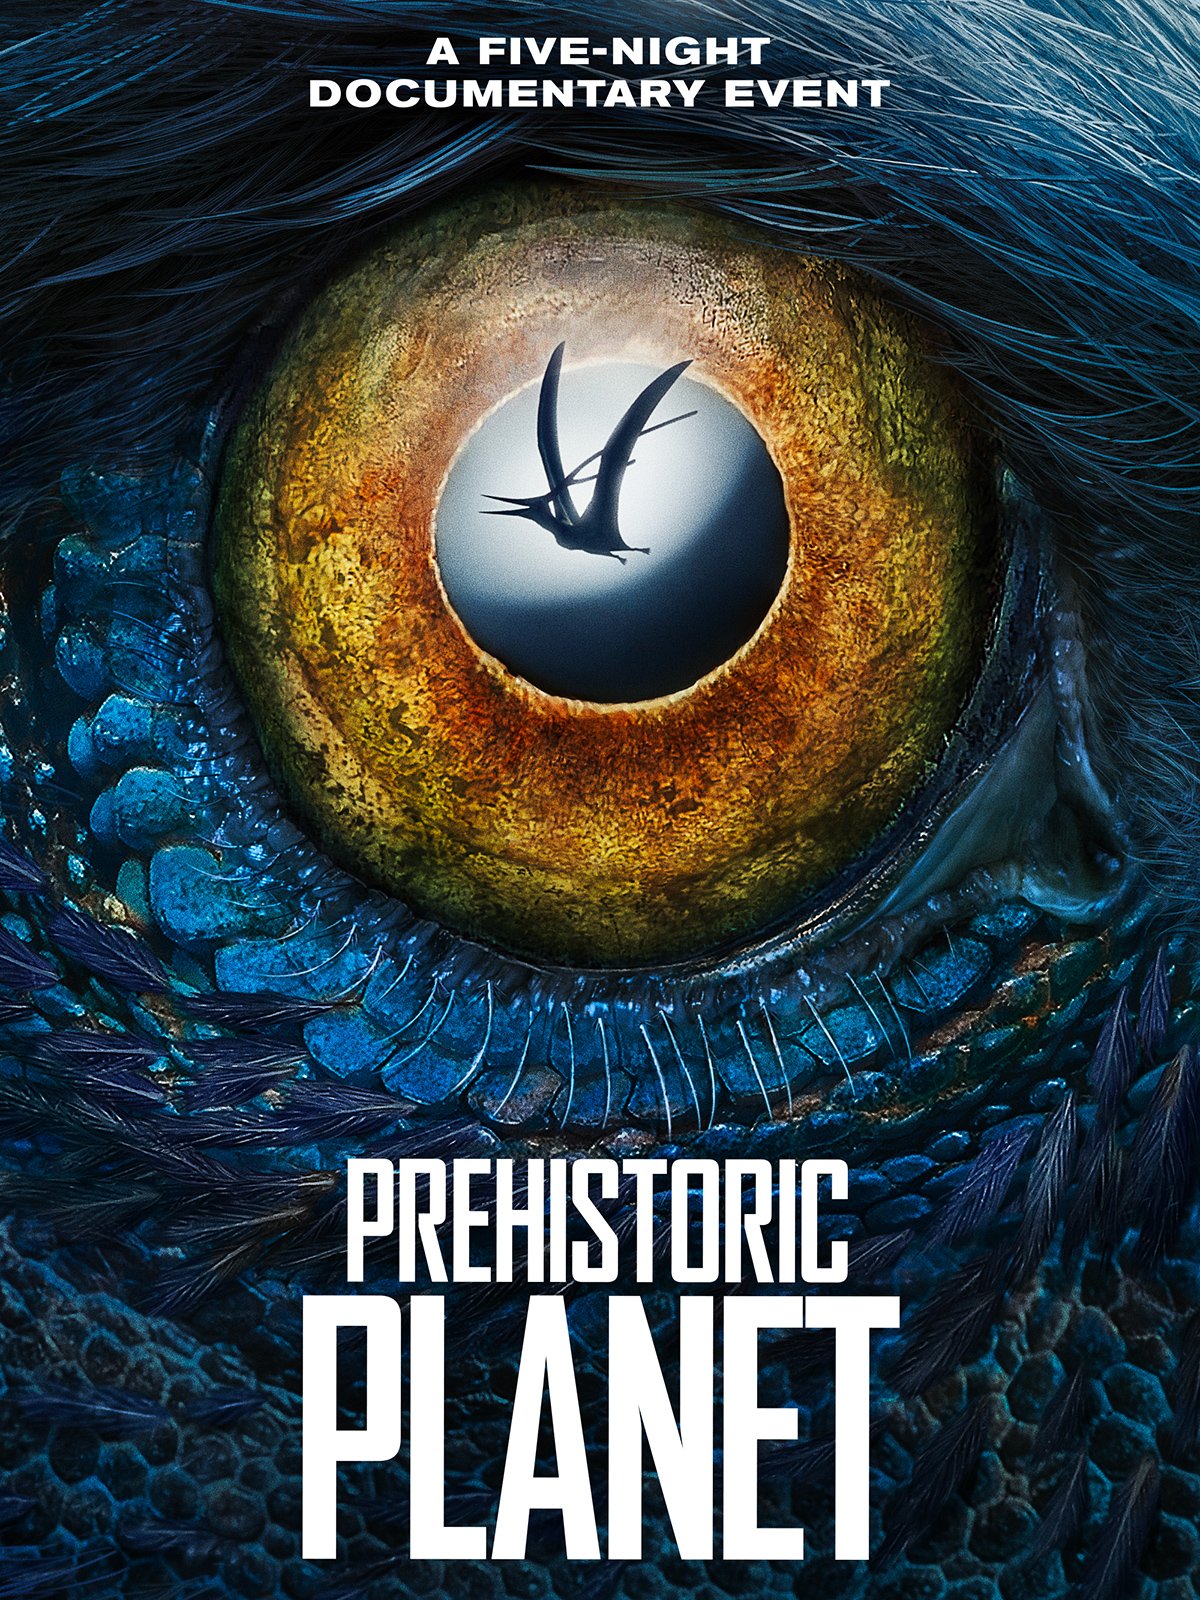 [心得] 史前地球 Prehistoric Planet (雷) AppleTV+ 恐龍紀錄片